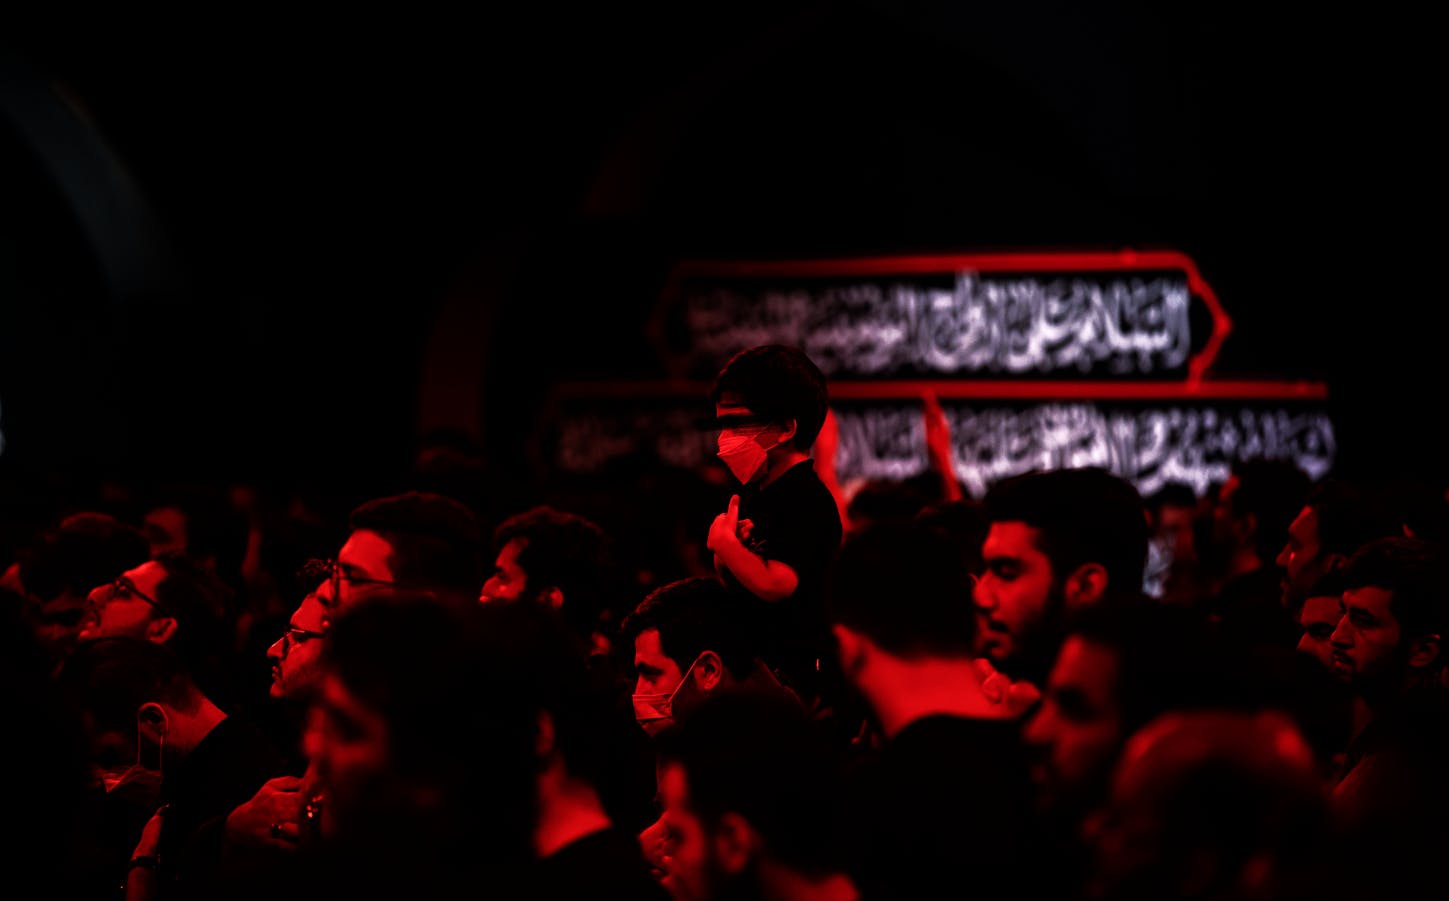 تصویری سیاه و قرمز، از یک هیئت امام حسین. تصویر از زاویه کنار، عزاداران را نشان میدهد و وسط تصویر یک کودک روی دوش مردی دیگر در حال سینه‌زدن است